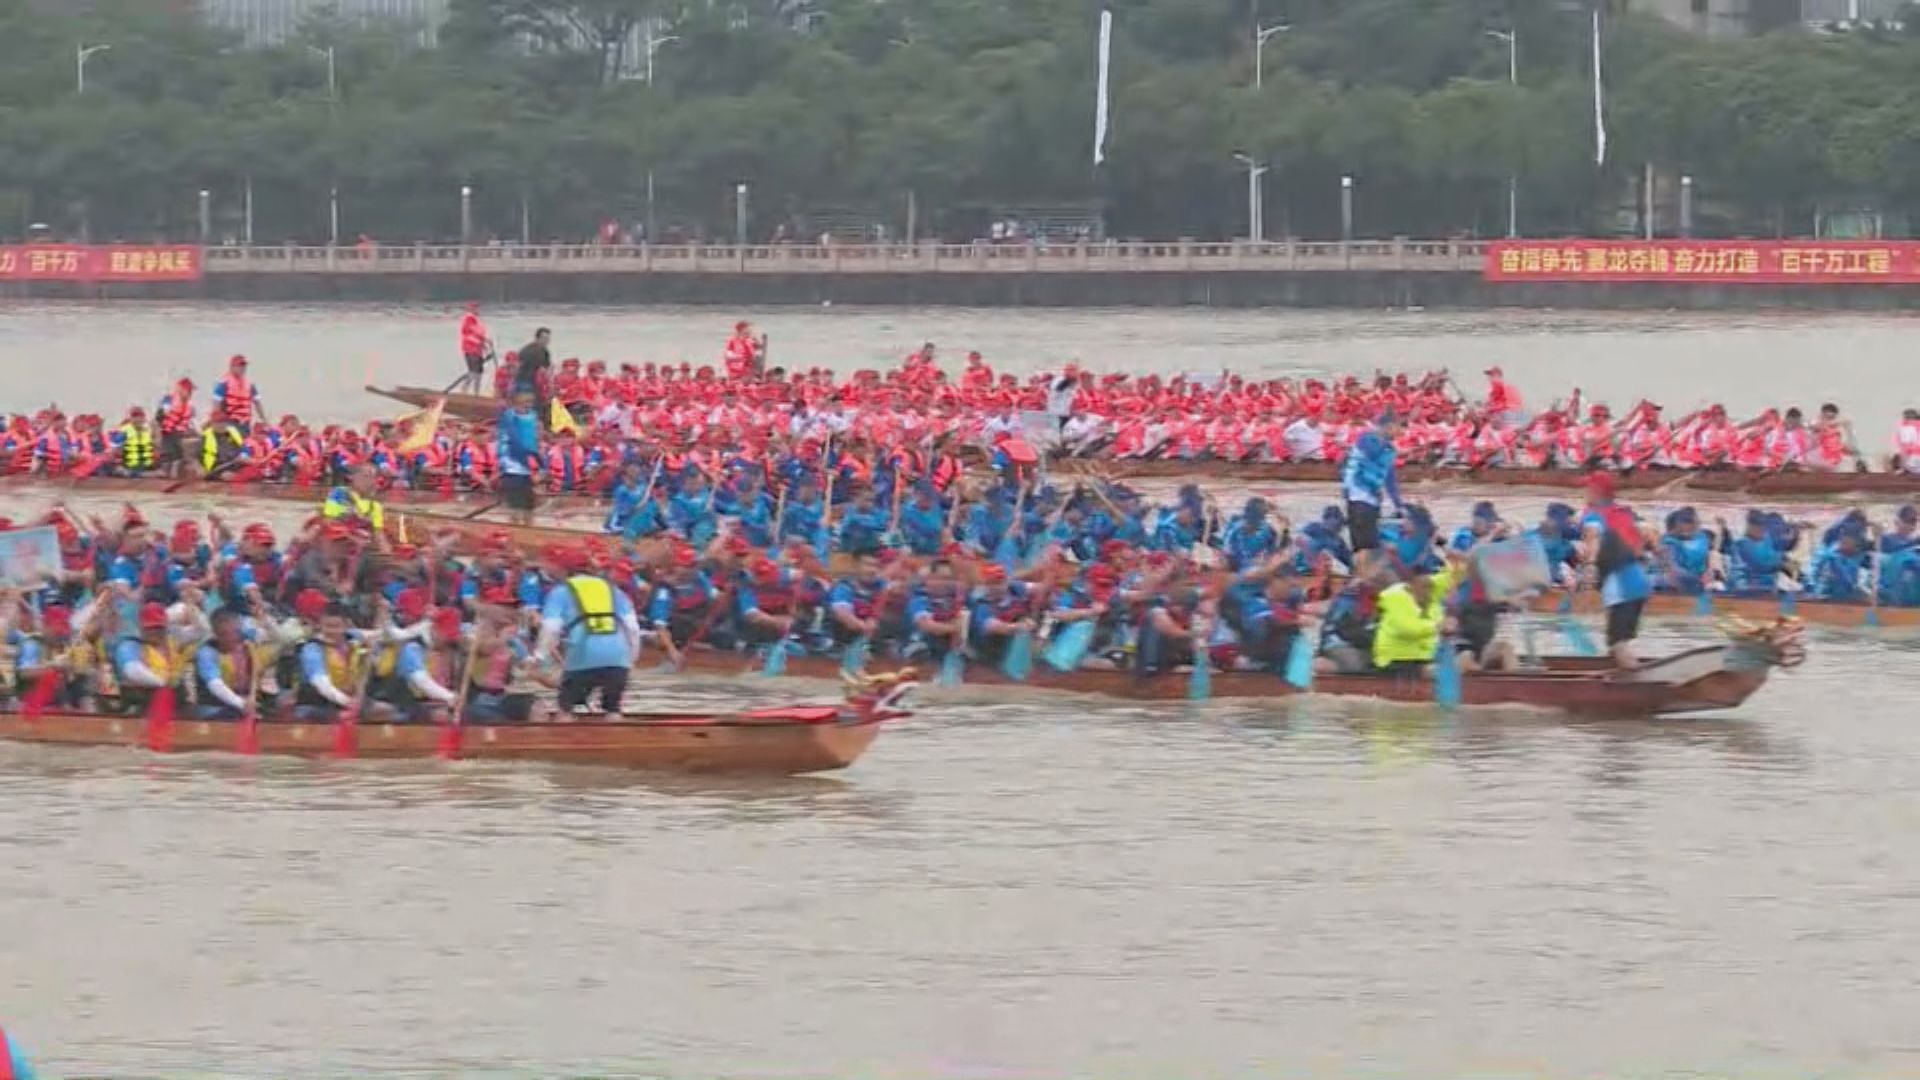 端午節假期 東莞推40多項龍舟活動吸引旅客感受氣氛